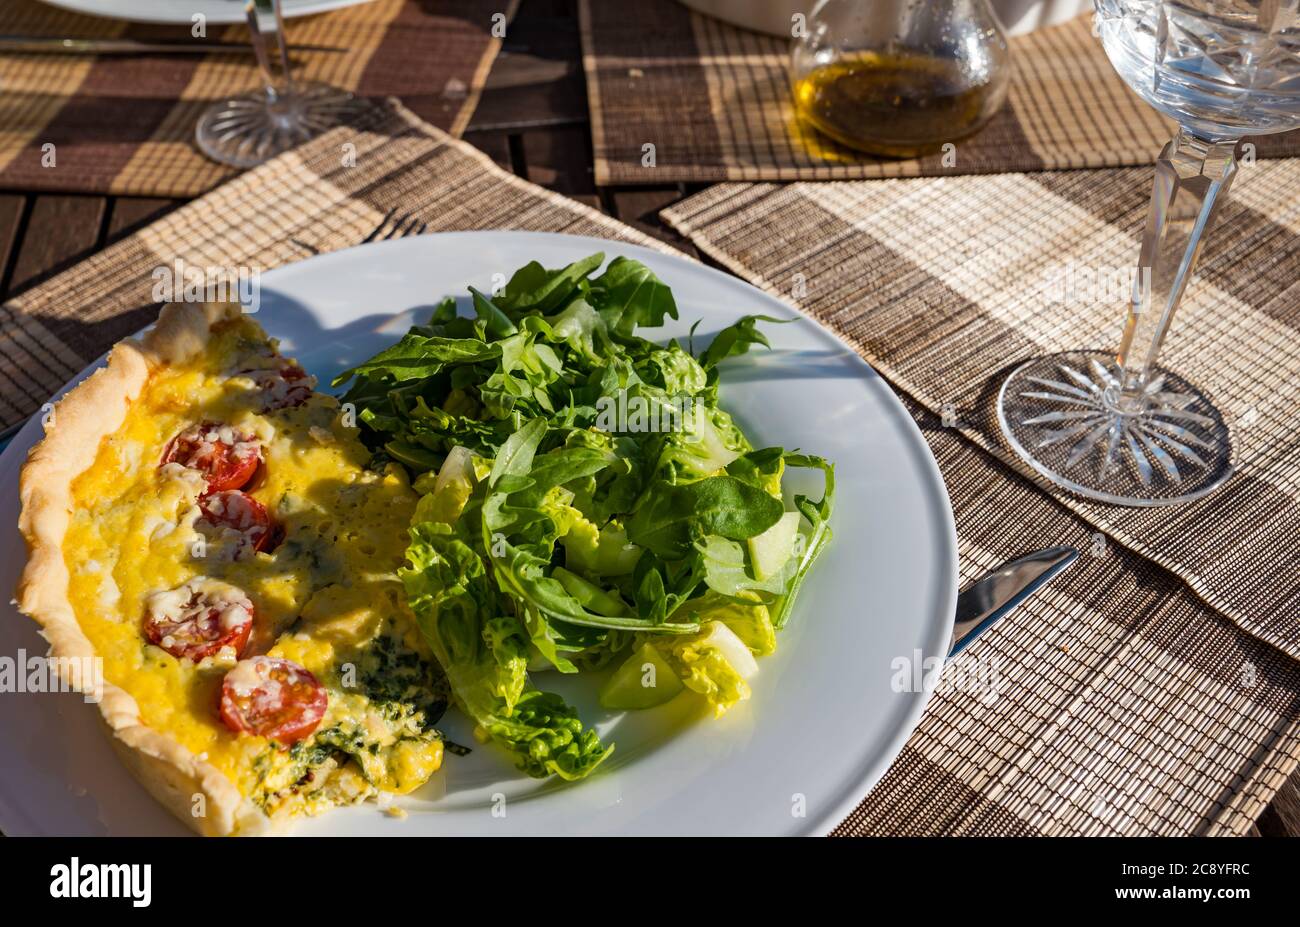 Table extérieure repas d'été de tomate et d'épinards quiche de pâtisserie lorraine et salade verte avec verre de vin cristal Banque D'Images